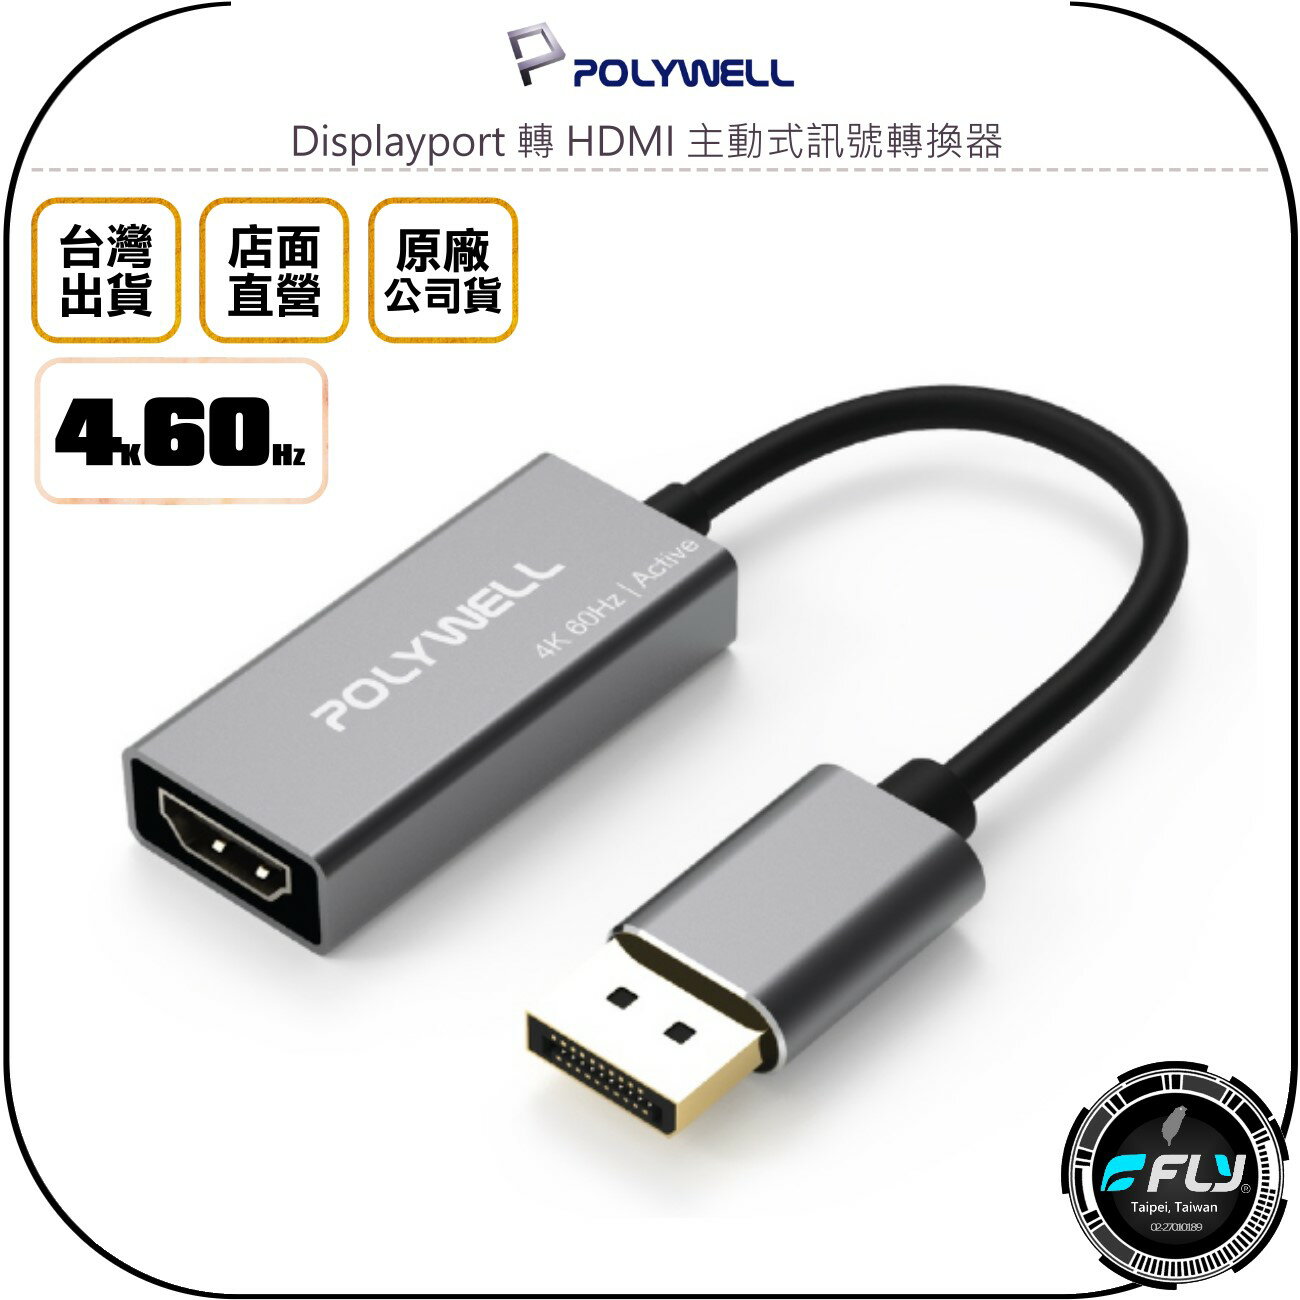 《飛翔無線3C》POLYWELL 寶利威爾 Displayport 轉 HDMI 主動式訊號轉換器◉公司貨◉4K60Hz